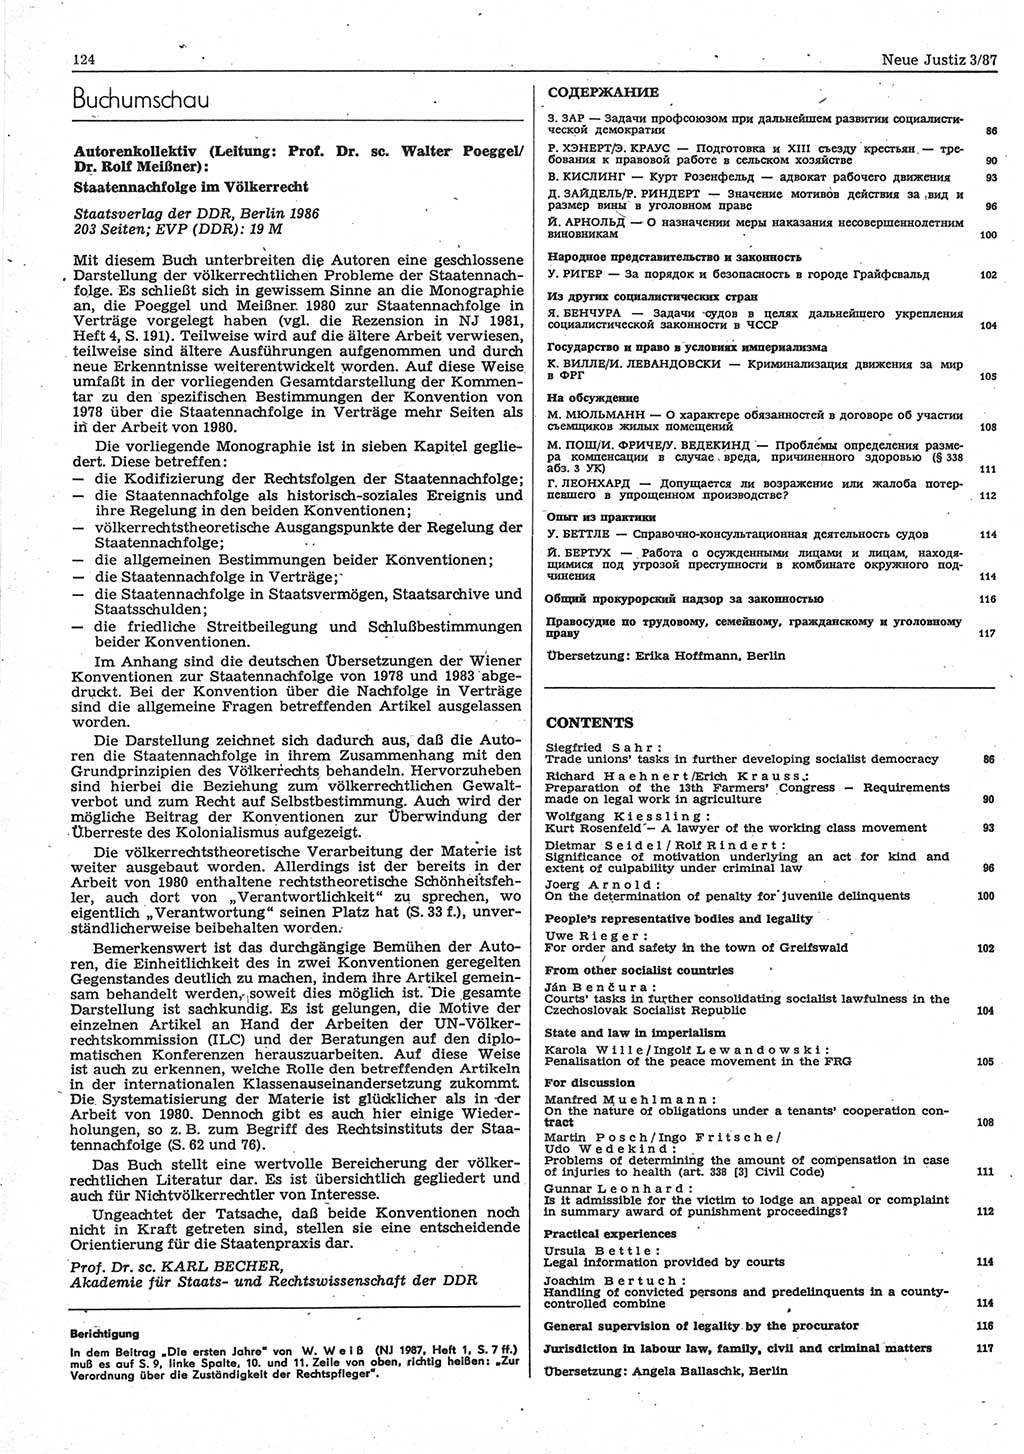 Neue Justiz (NJ), Zeitschrift für sozialistisches Recht und Gesetzlichkeit [Deutsche Demokratische Republik (DDR)], 41. Jahrgang 1987, Seite 124 (NJ DDR 1987, S. 124)